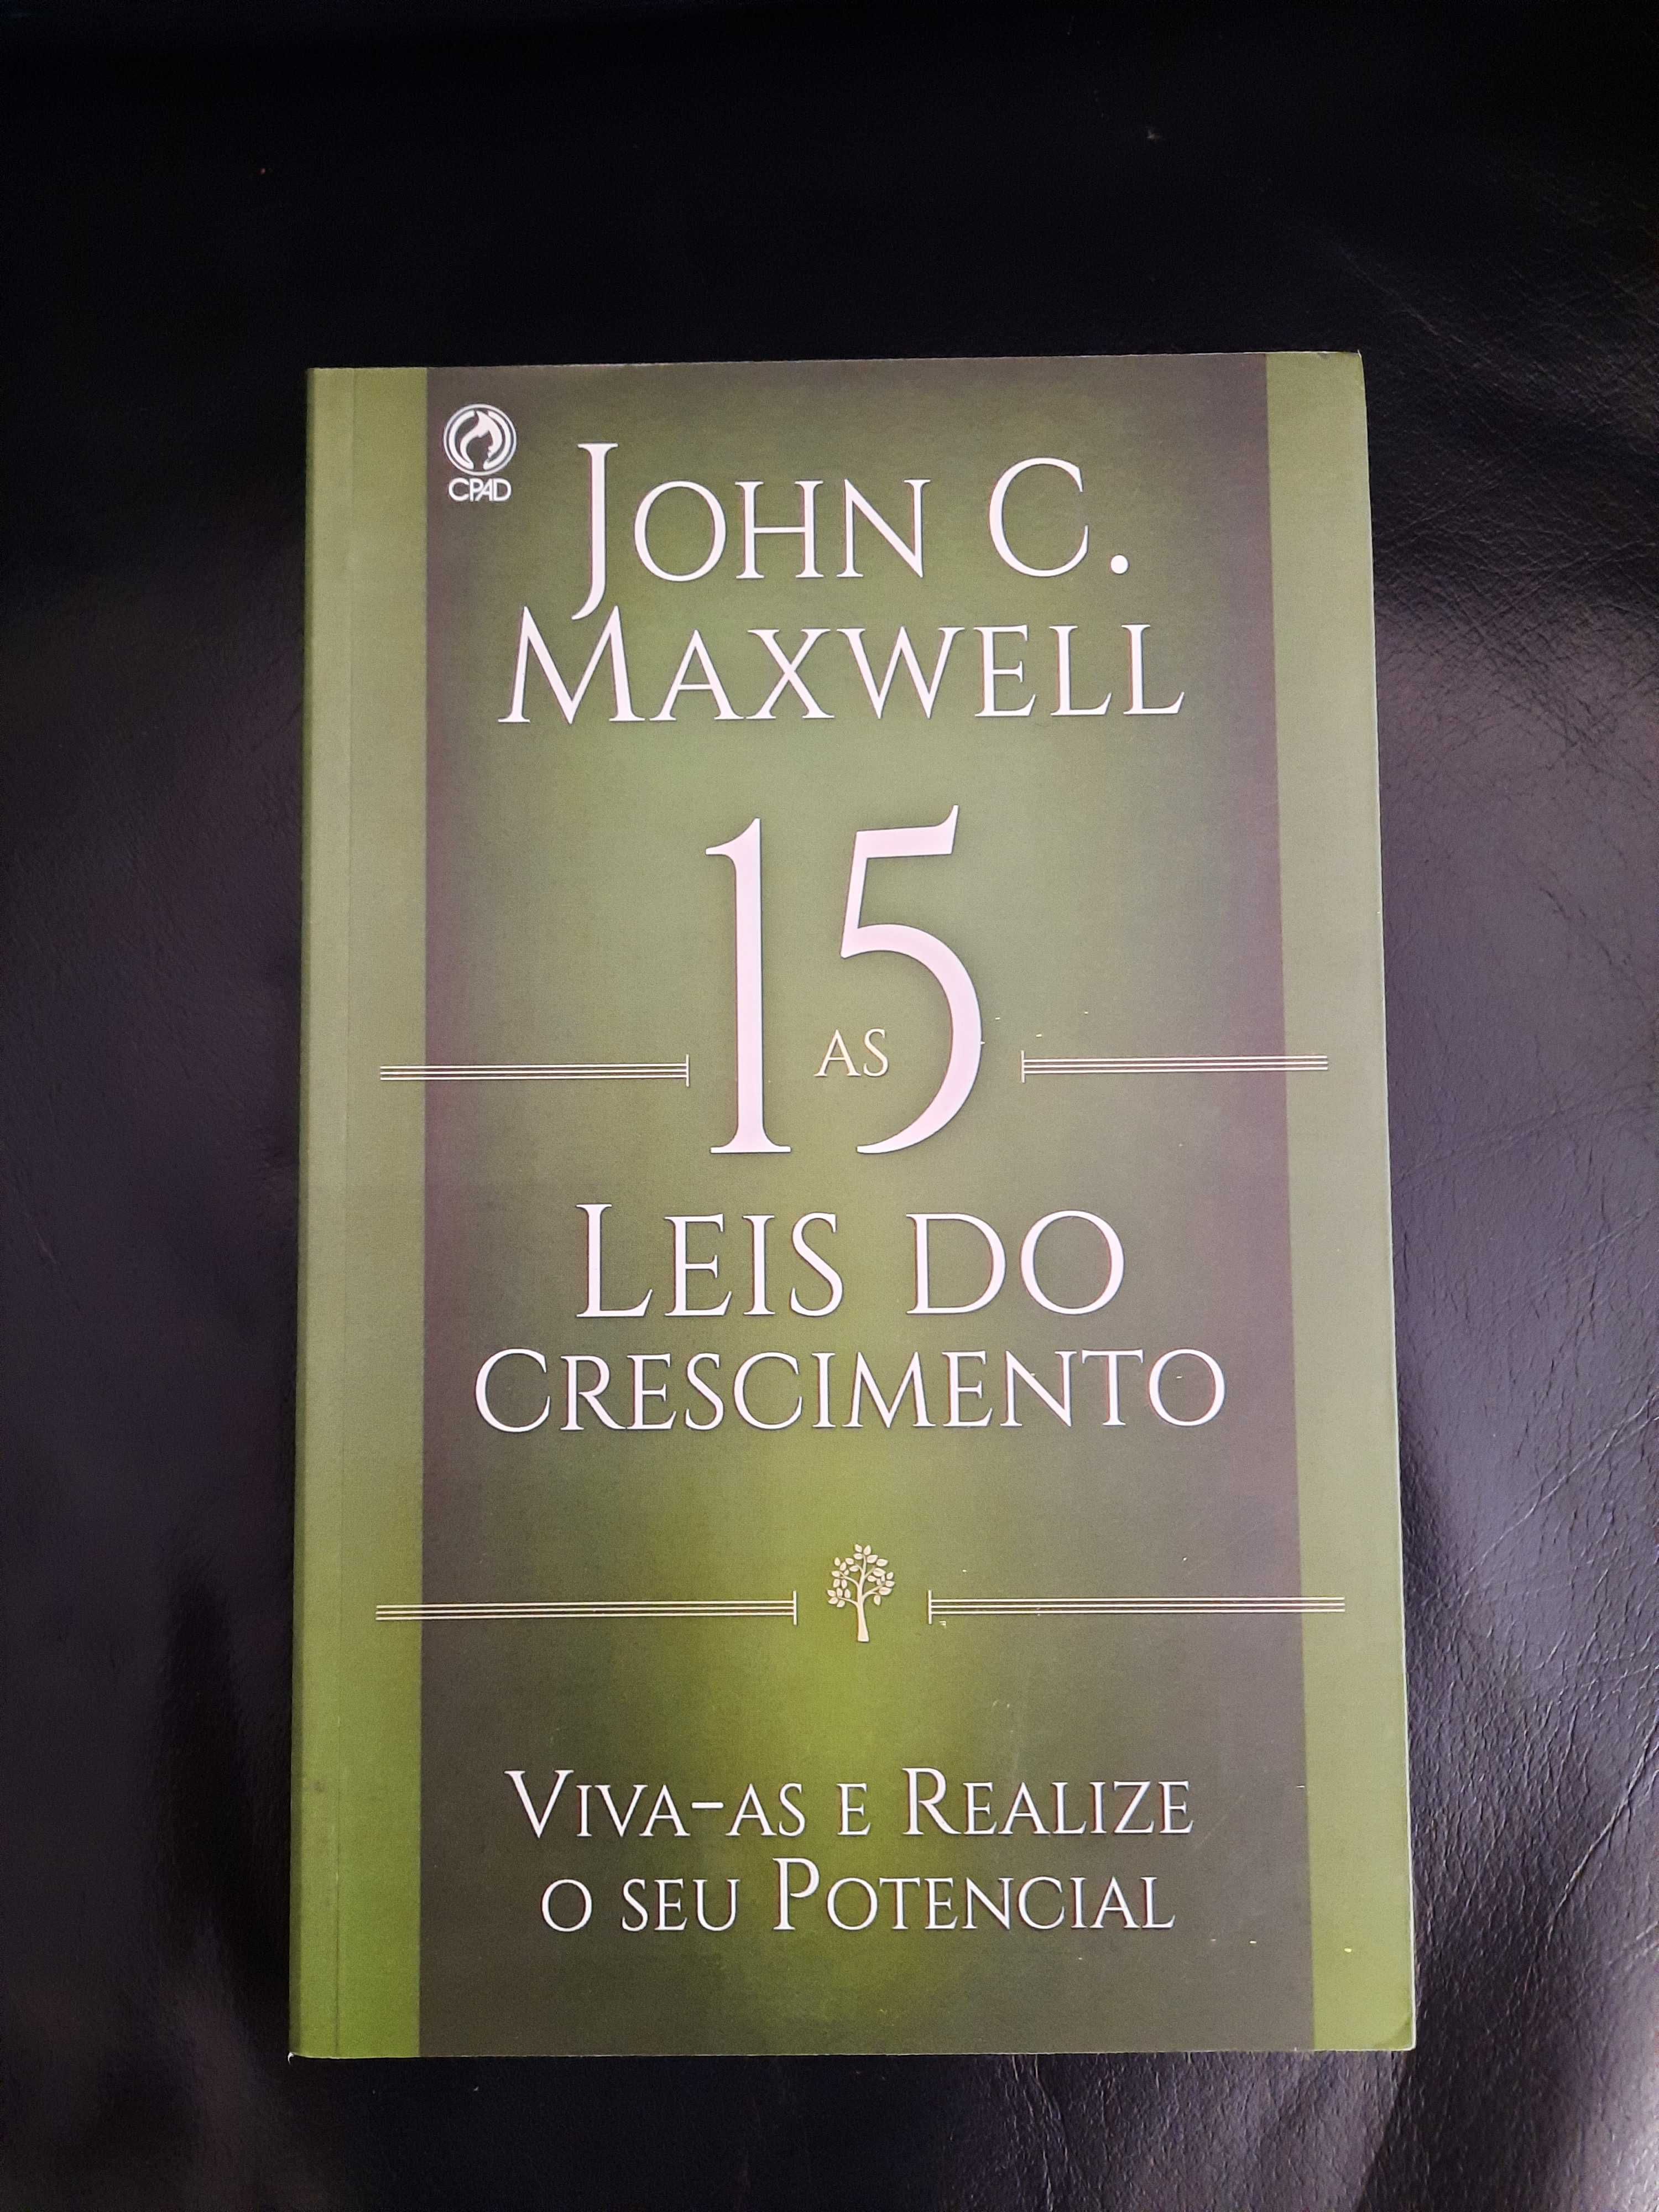 John C. Maxwell - As 15 leis do crescimento